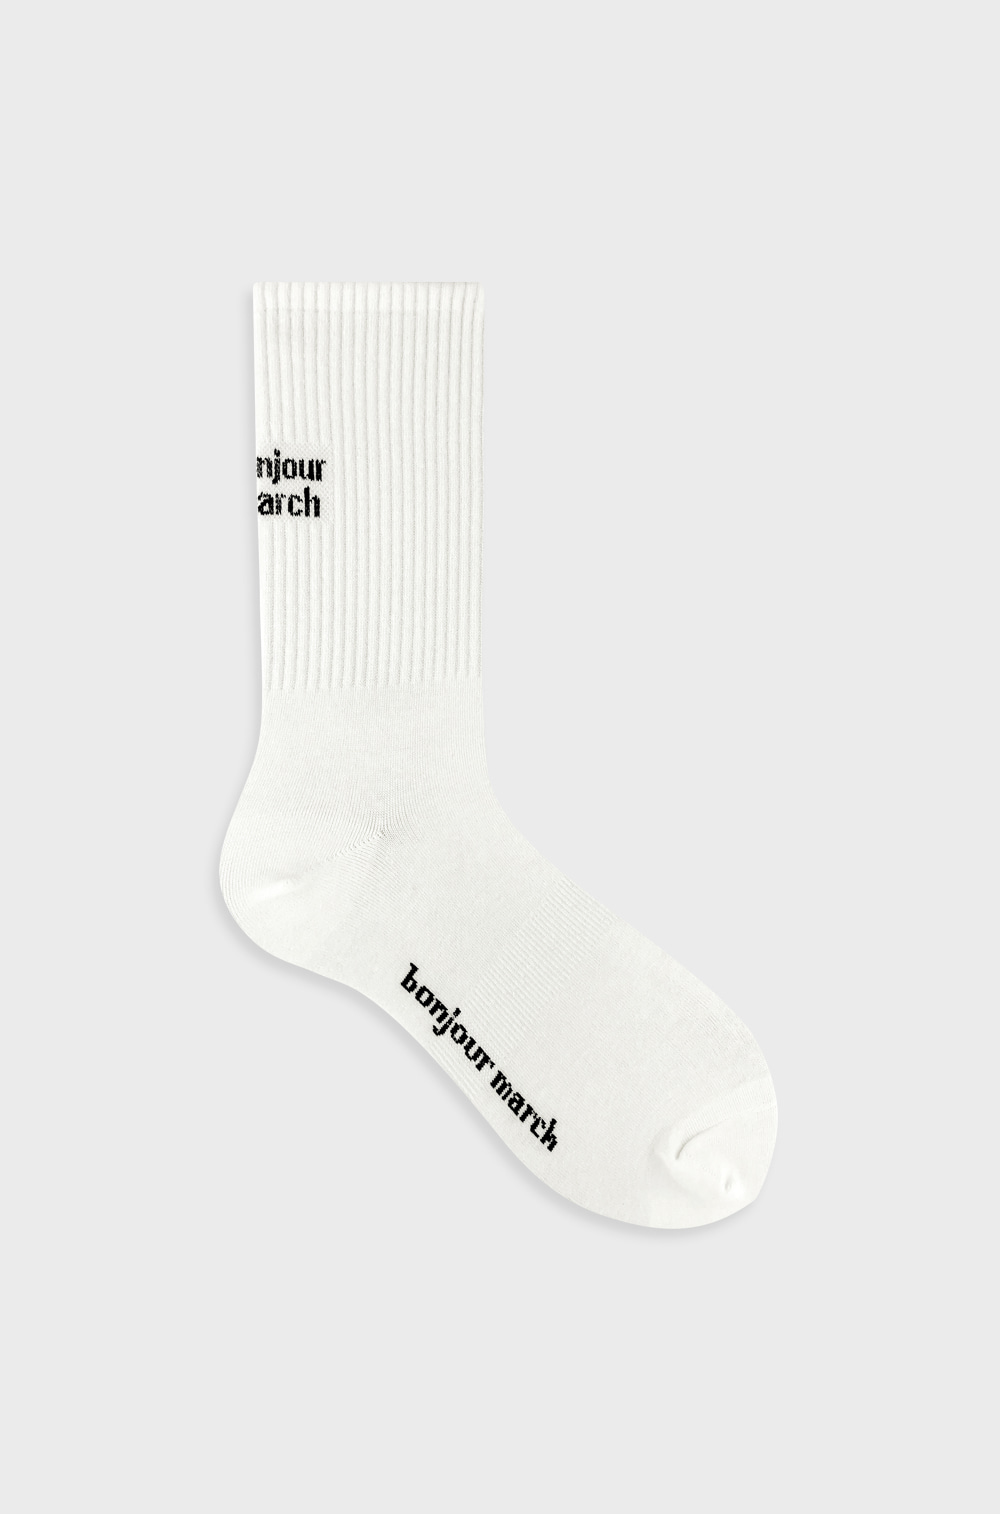 Bonjour march sporty socks_men